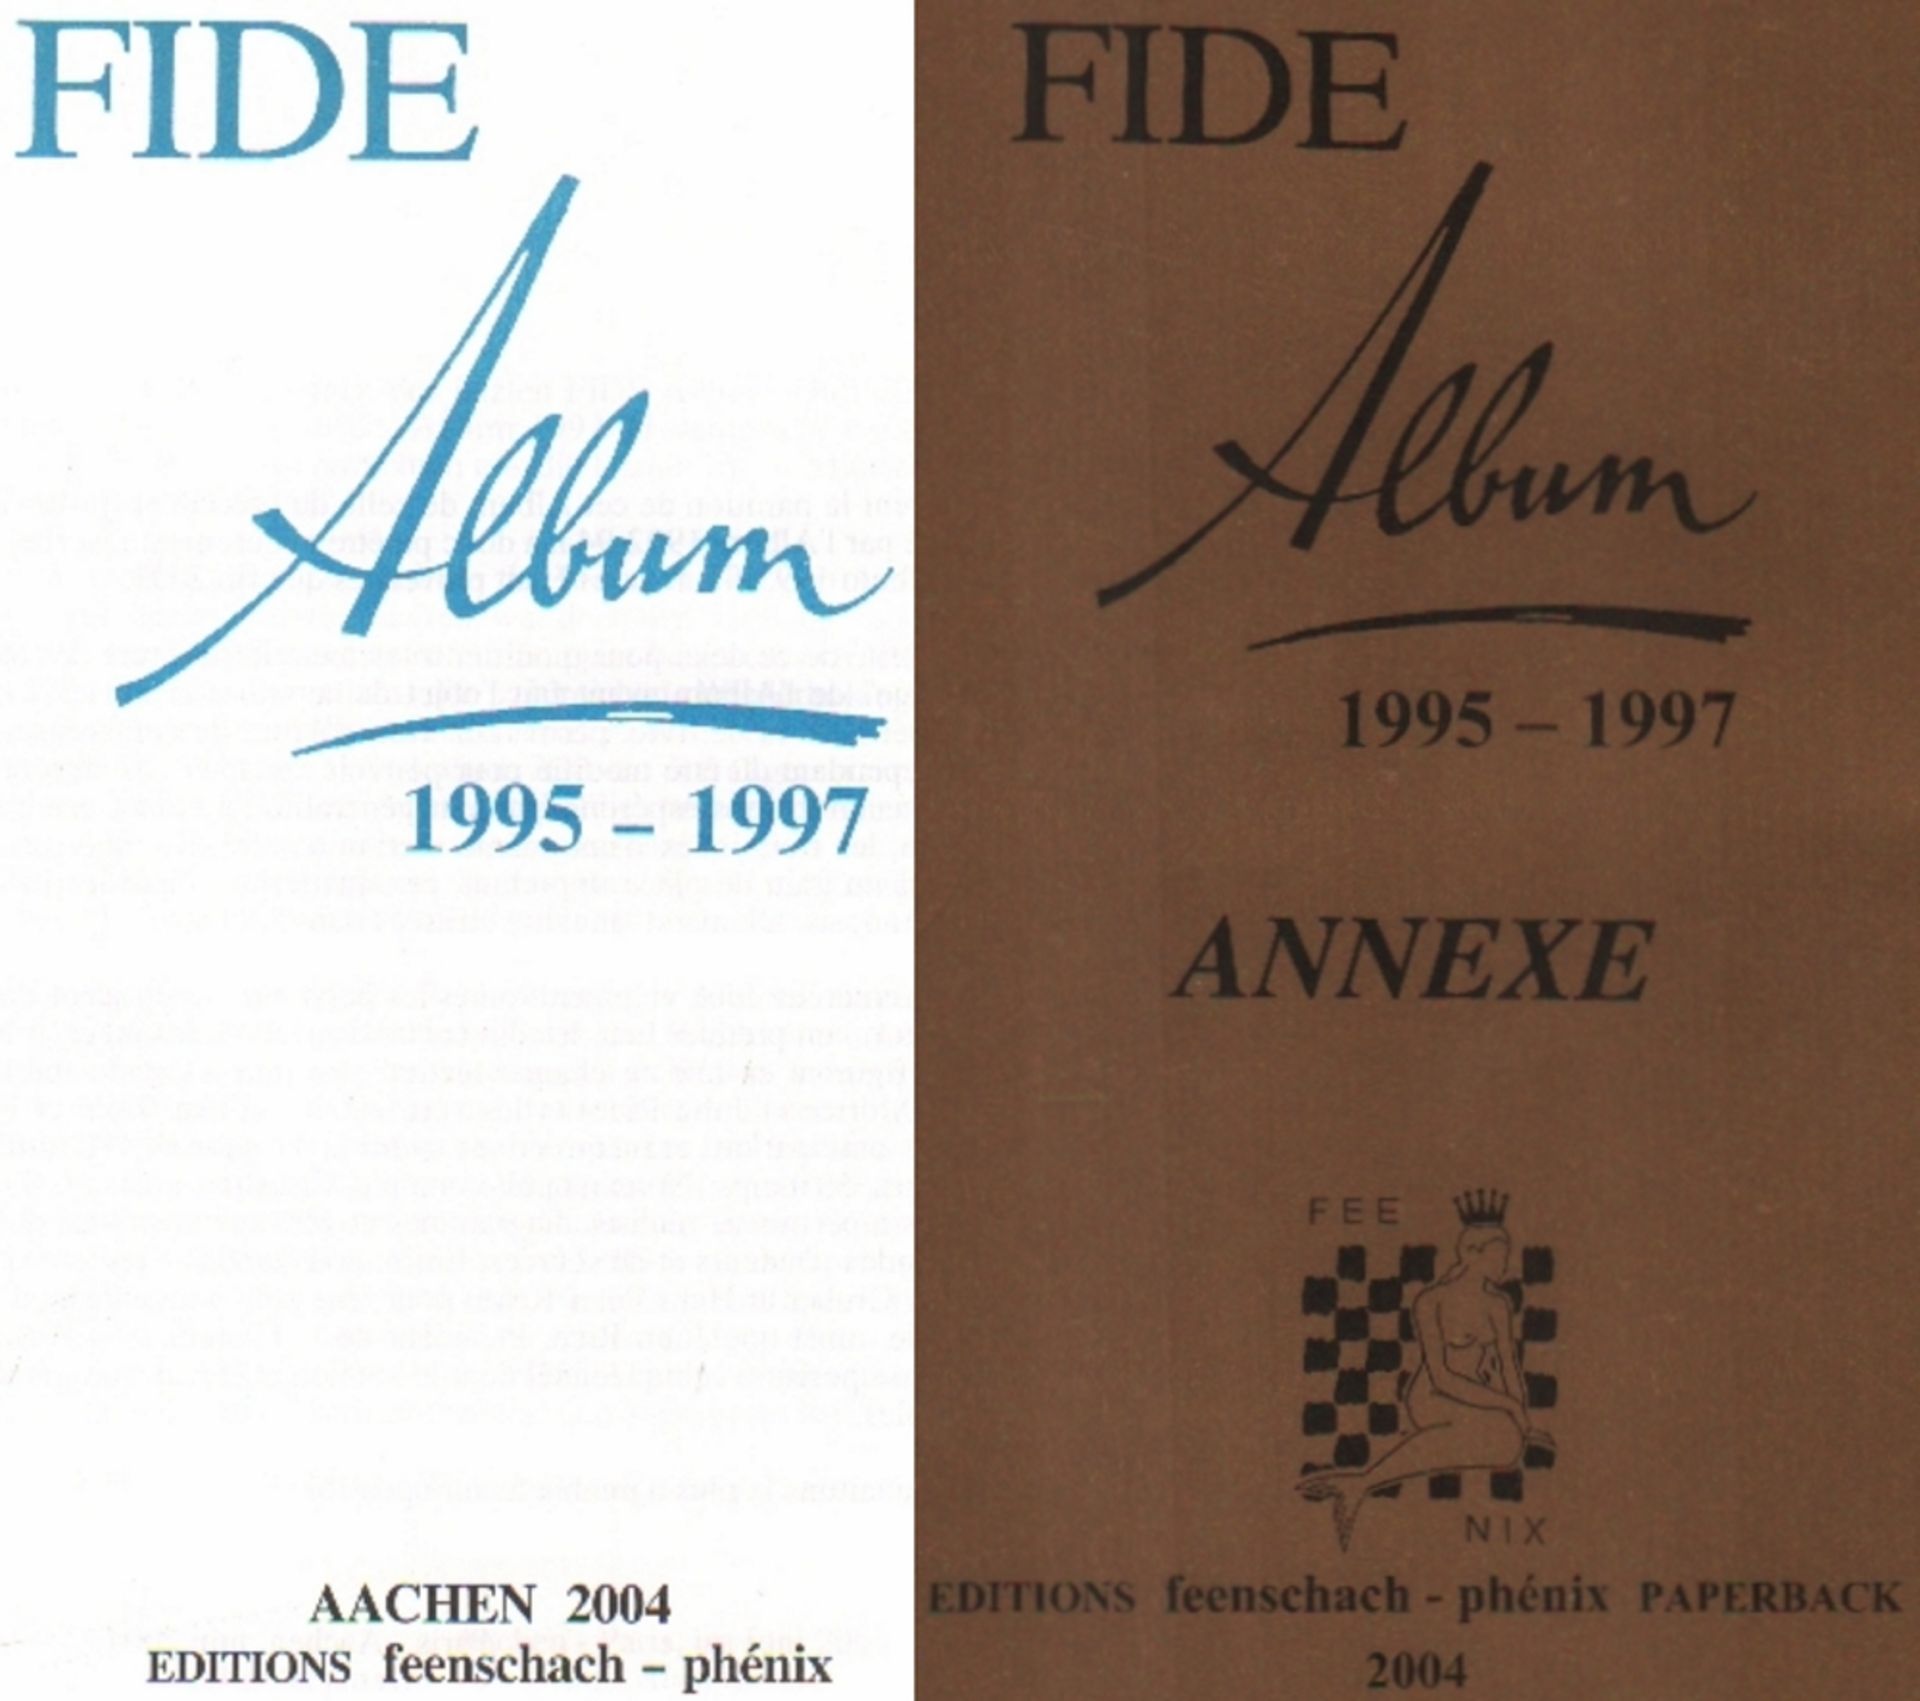 FIDE - Album. 1995 - 1997. / FIDE - Album. 1995 - 1997 Annexe. Hrsg. von Bernd Ellinghoven. 2 Bände.